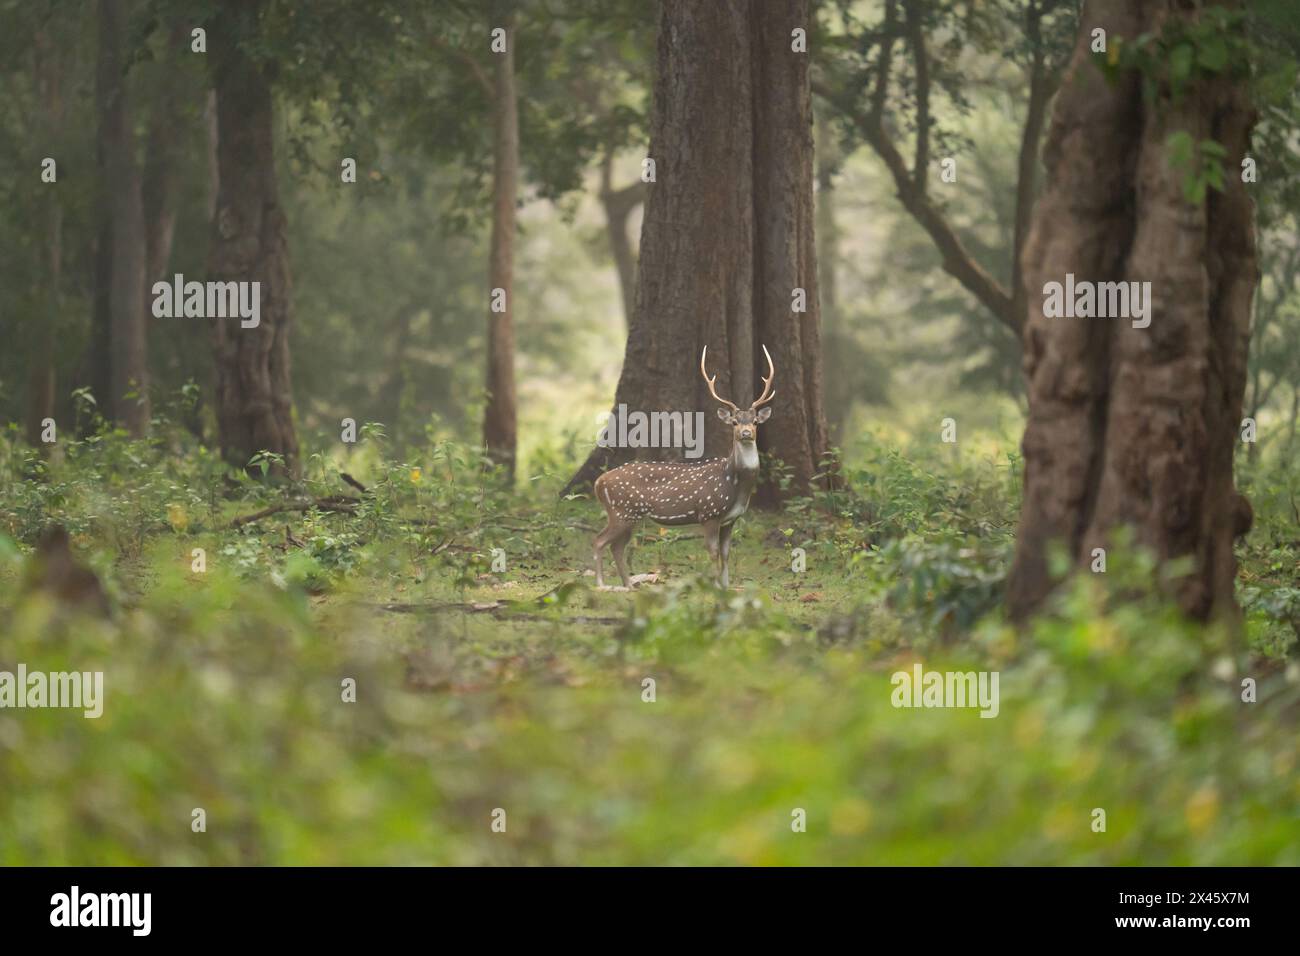 Achsenhirsch oder Chital, im wunderschönen Dschungel-Wald von Kabini, Karnataka Indien, während einer 5-tägigen Safari. Stockfoto